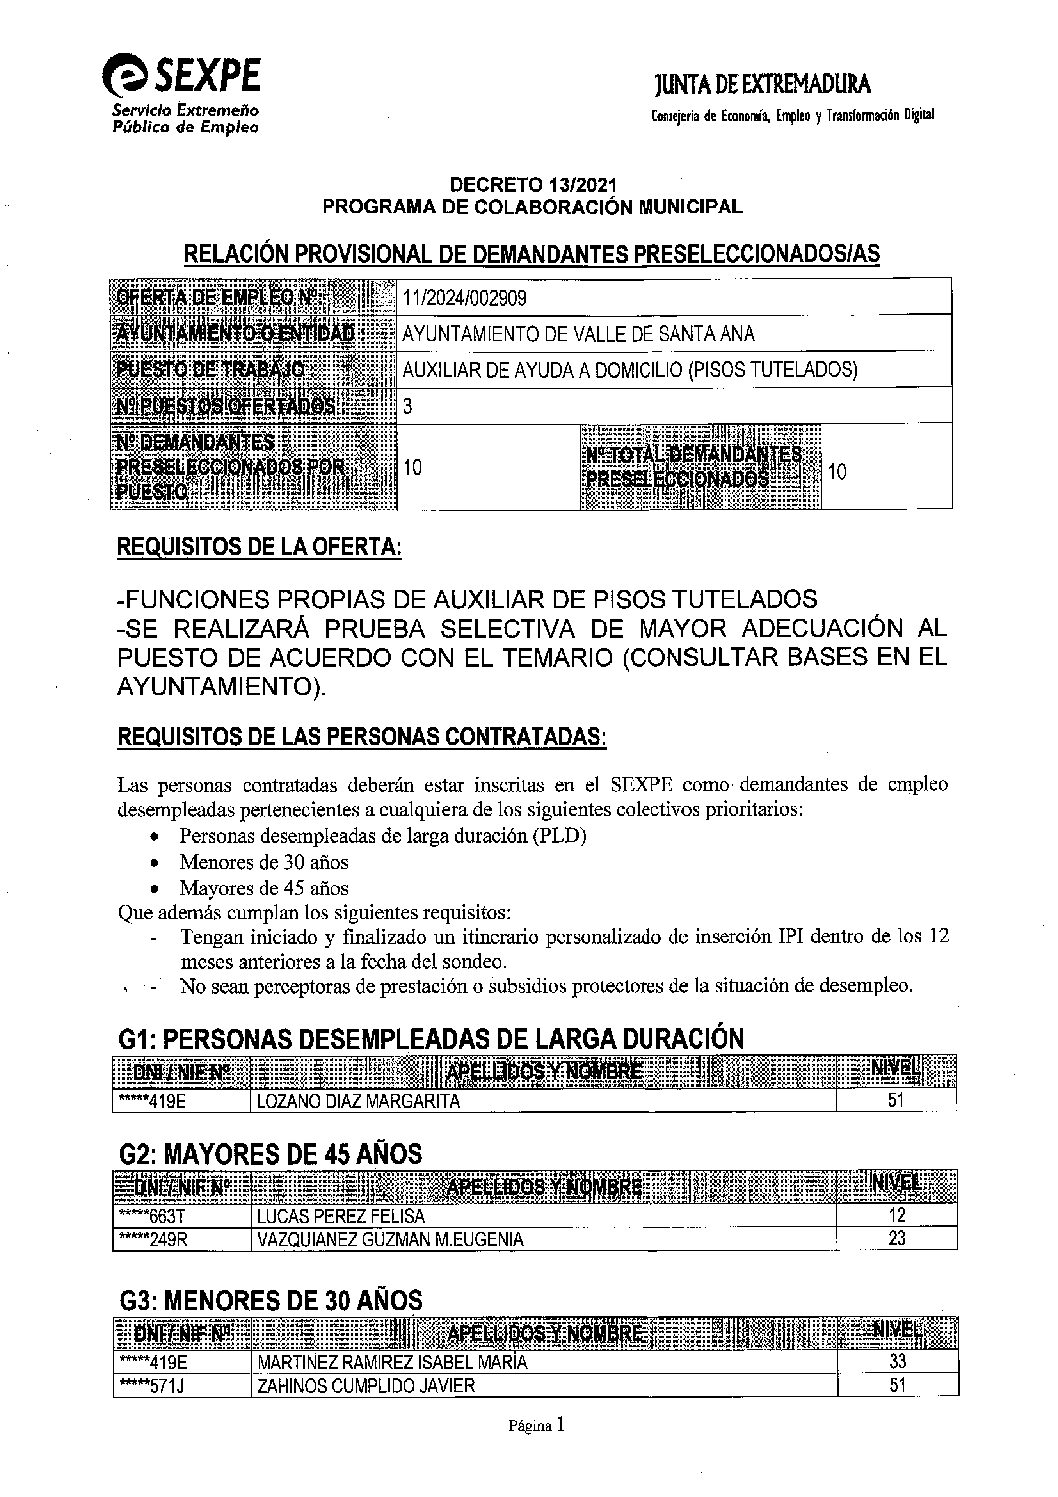 RELACIÓN PROVISIONAL DE DEMANDANTES PRESELECCIONADOS/AS PARA AUXILIAR DE AYUDA A DOMILIO (PISOS TUTELADOS).